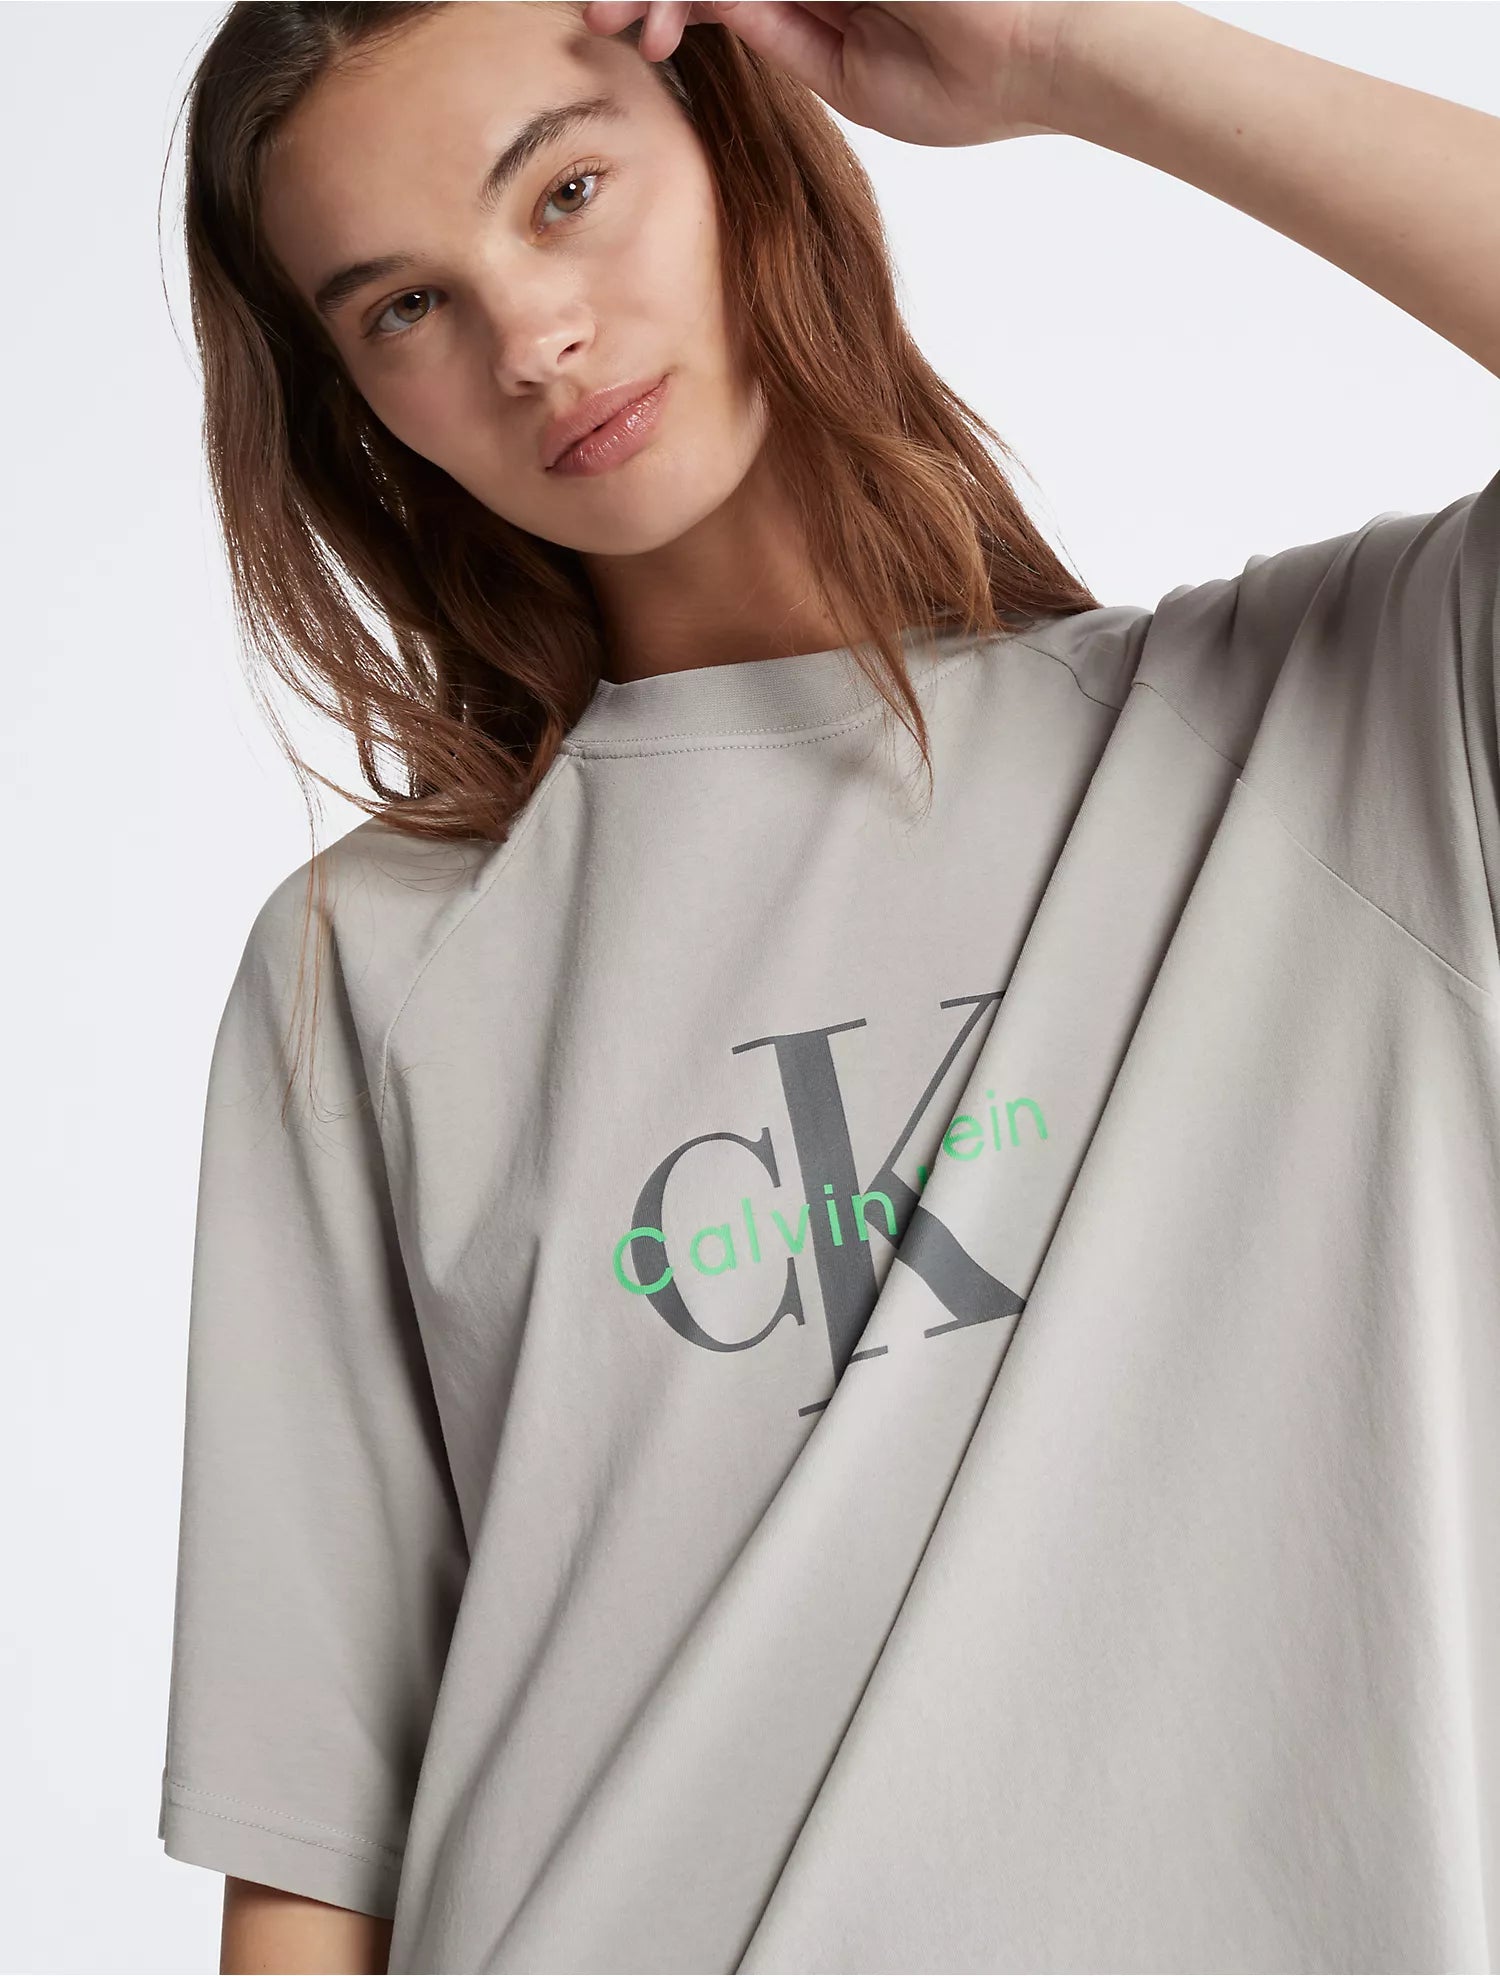 Calvin Klein Naturals Tea Dye T-Shirt Dress - Women